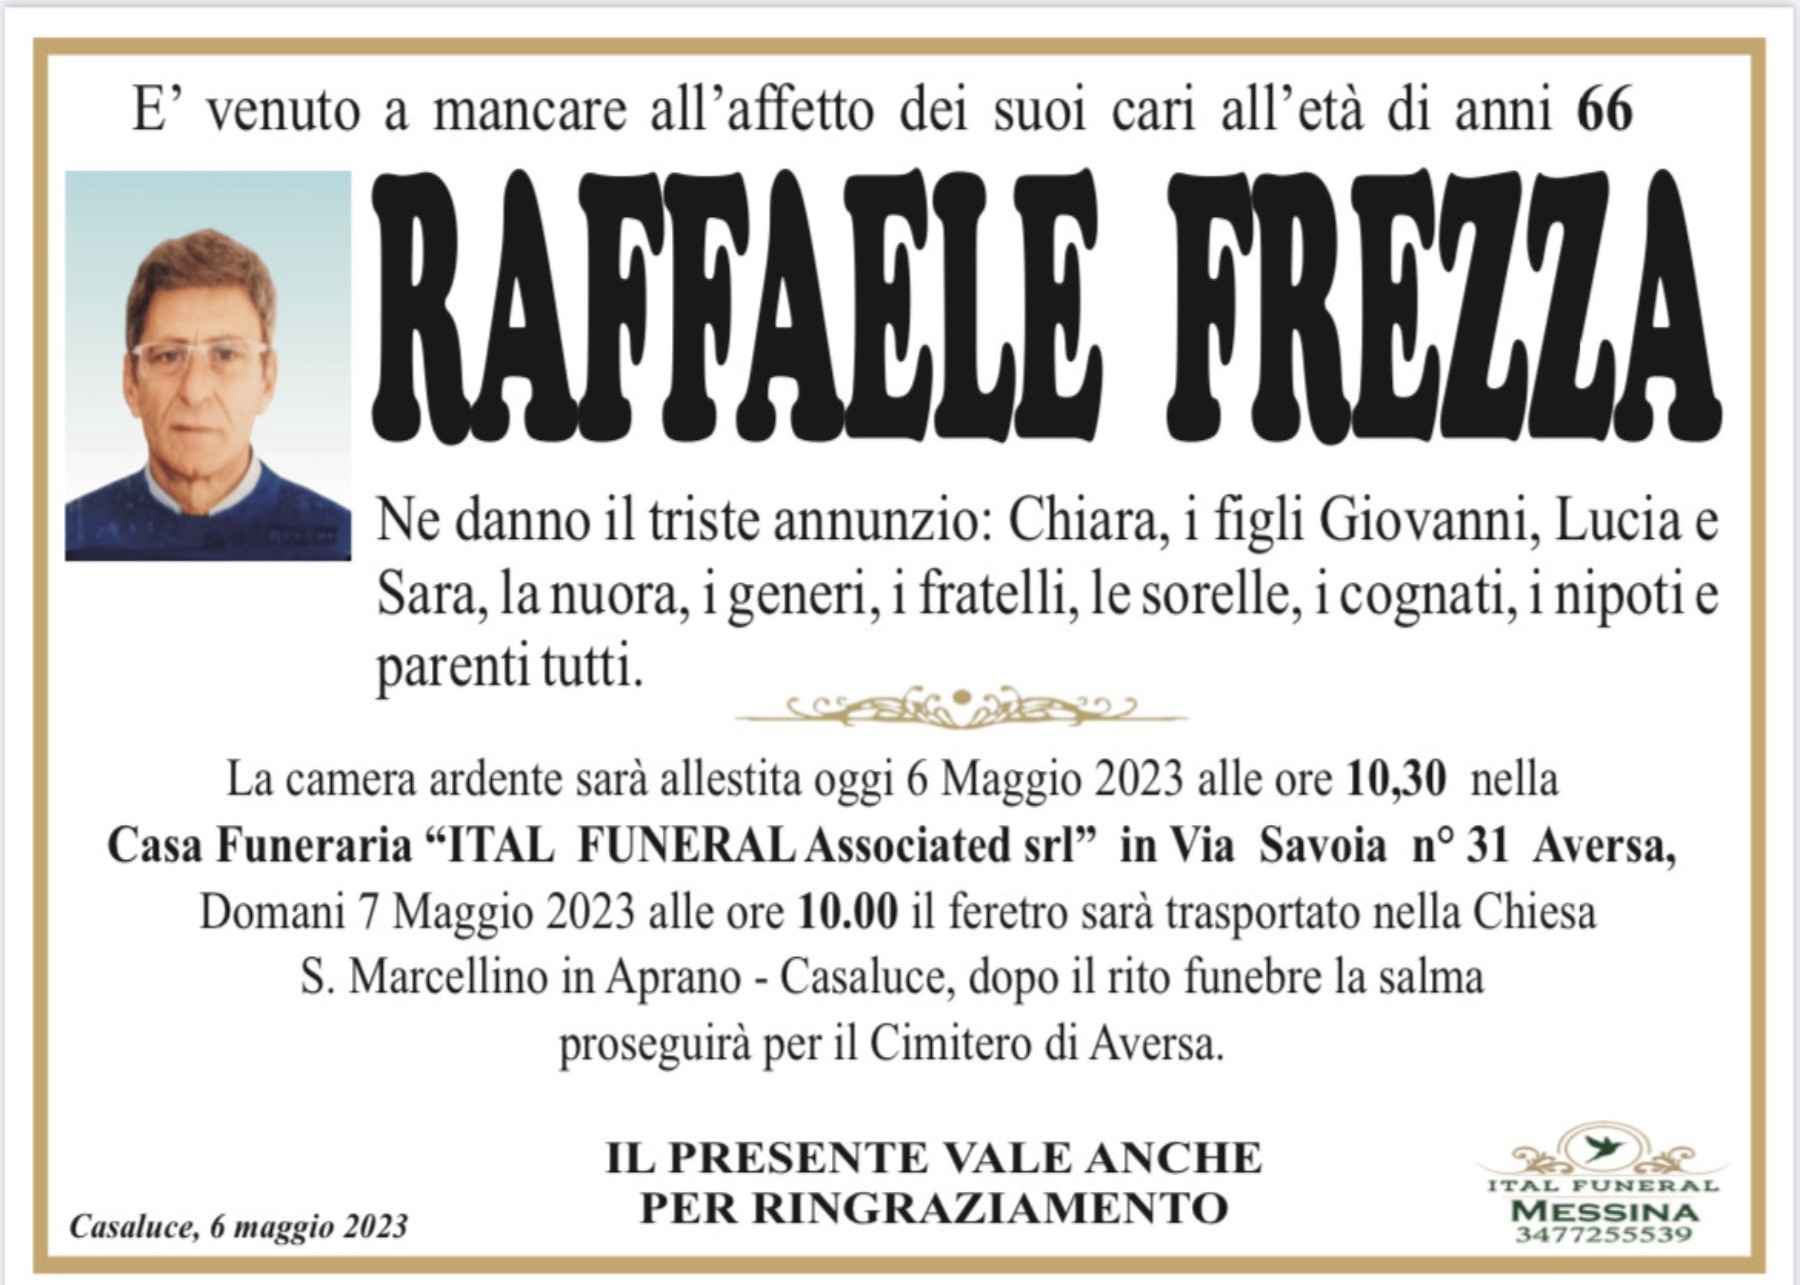 Raffaele Frezza